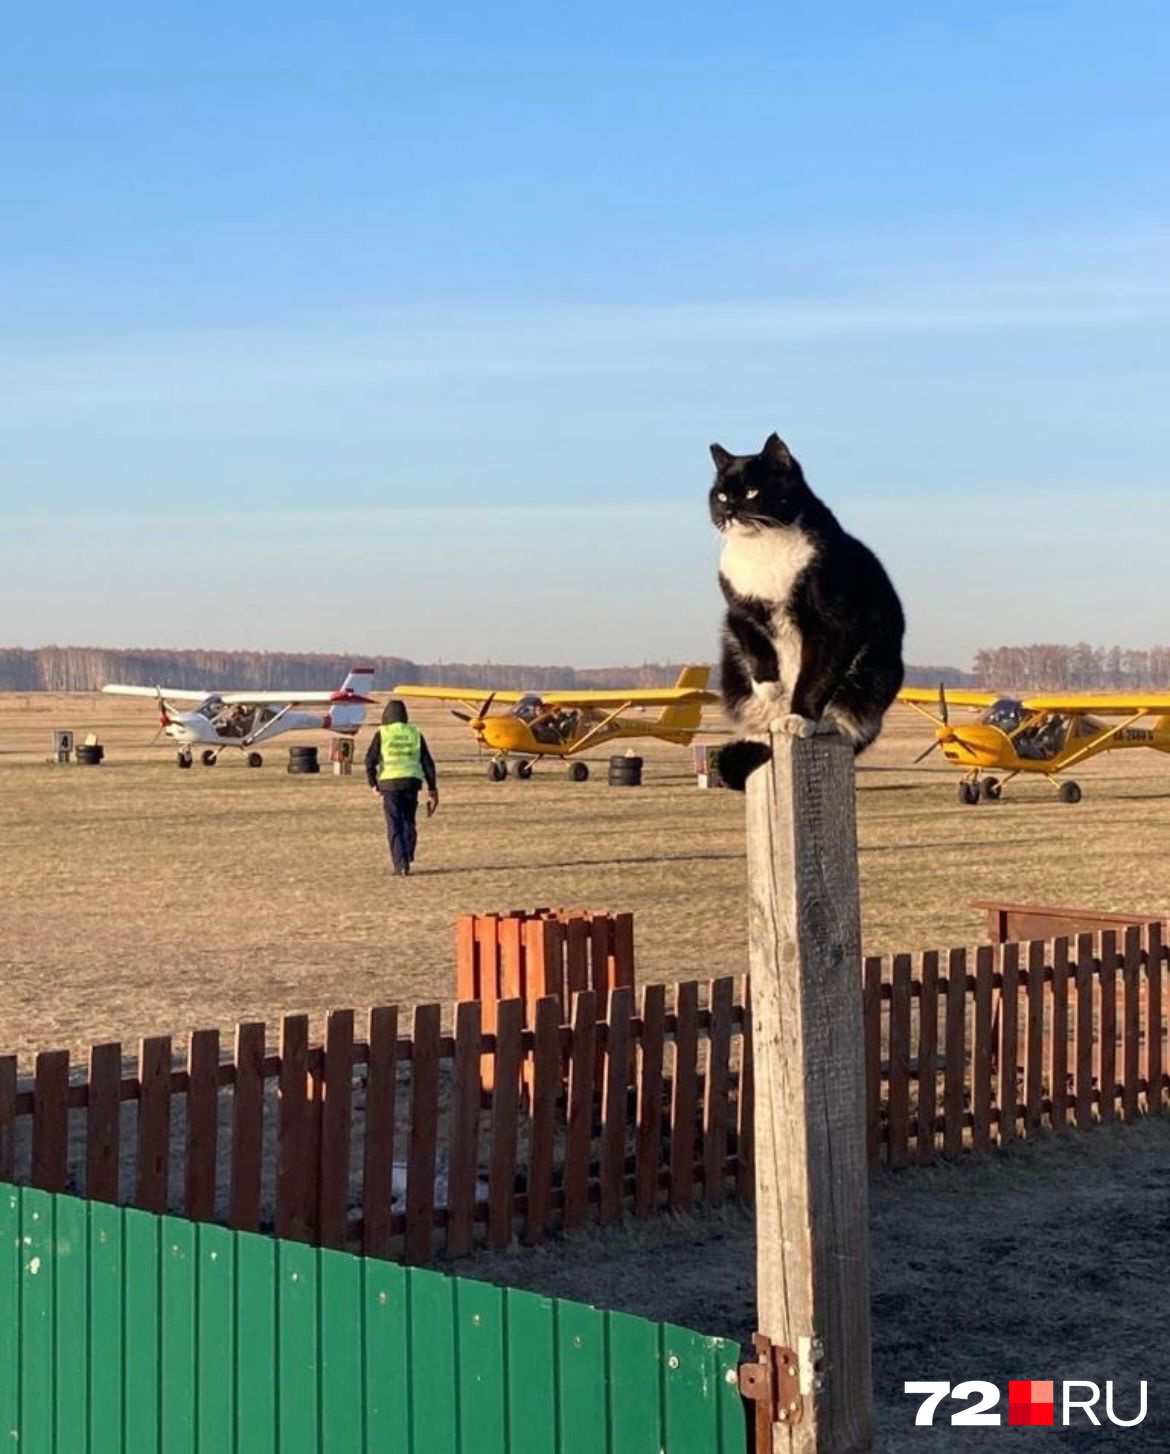 Этот котик живет на аэродроме и следит за порядком. Посмотрите, какой у него грозный взгляд